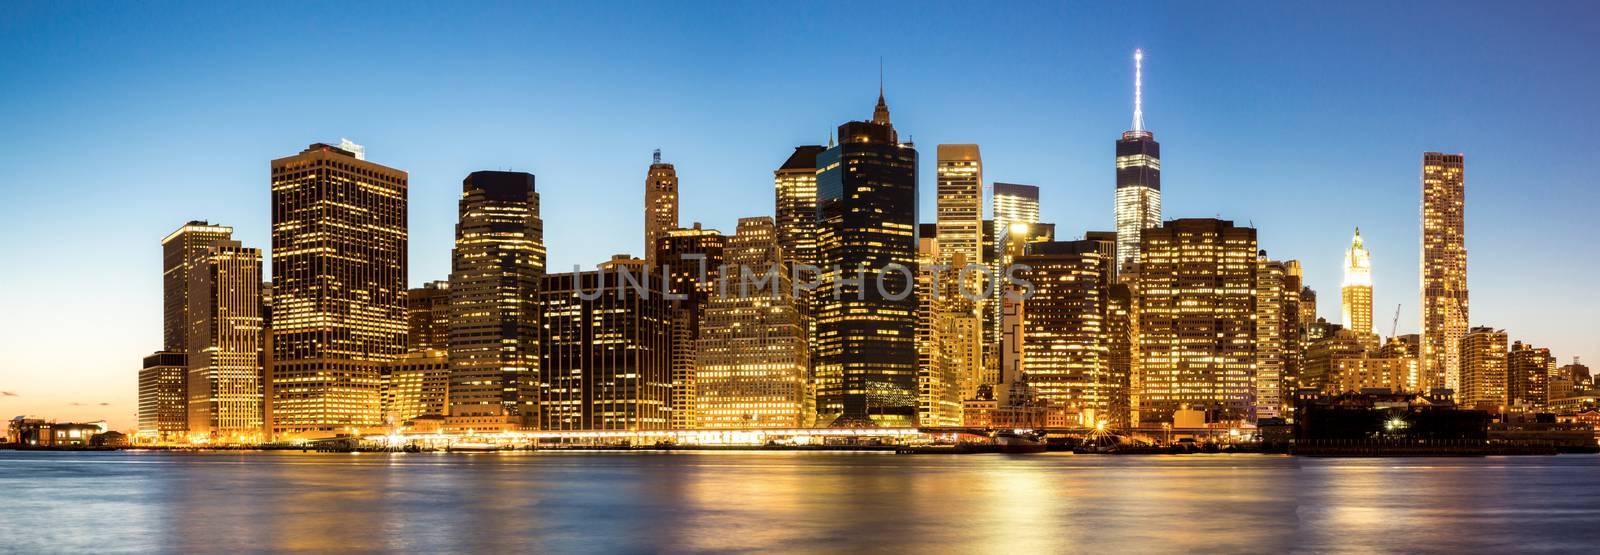 Panorama of New York City Manhattan skyline by vichie81